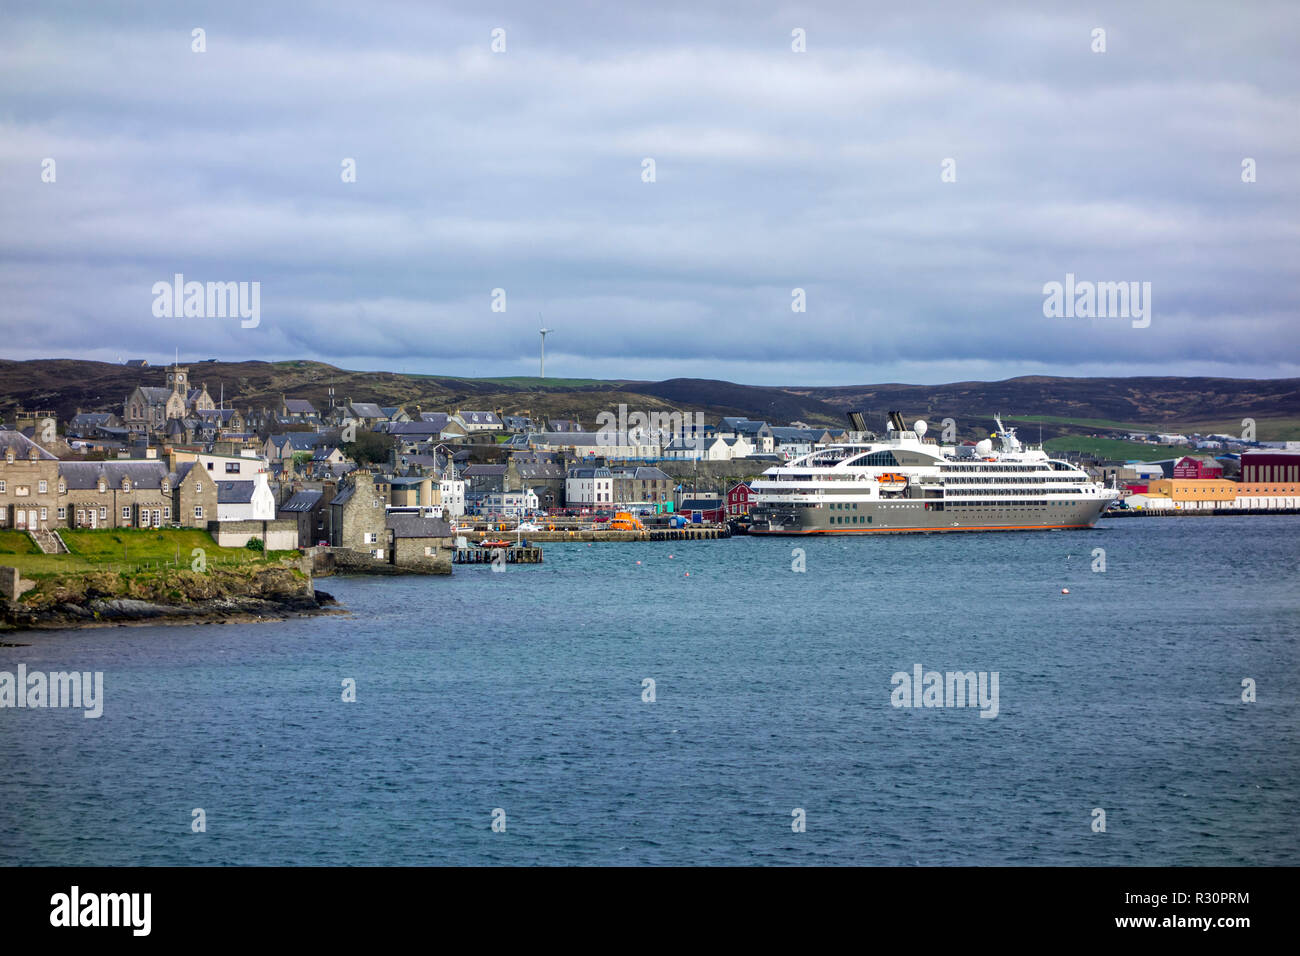 Le Boreal, navire de croisière de la compagnie française de croisières Compagnie du Ponant dans le port de Lerwick, Shetland, Scotland, UK Banque D'Images